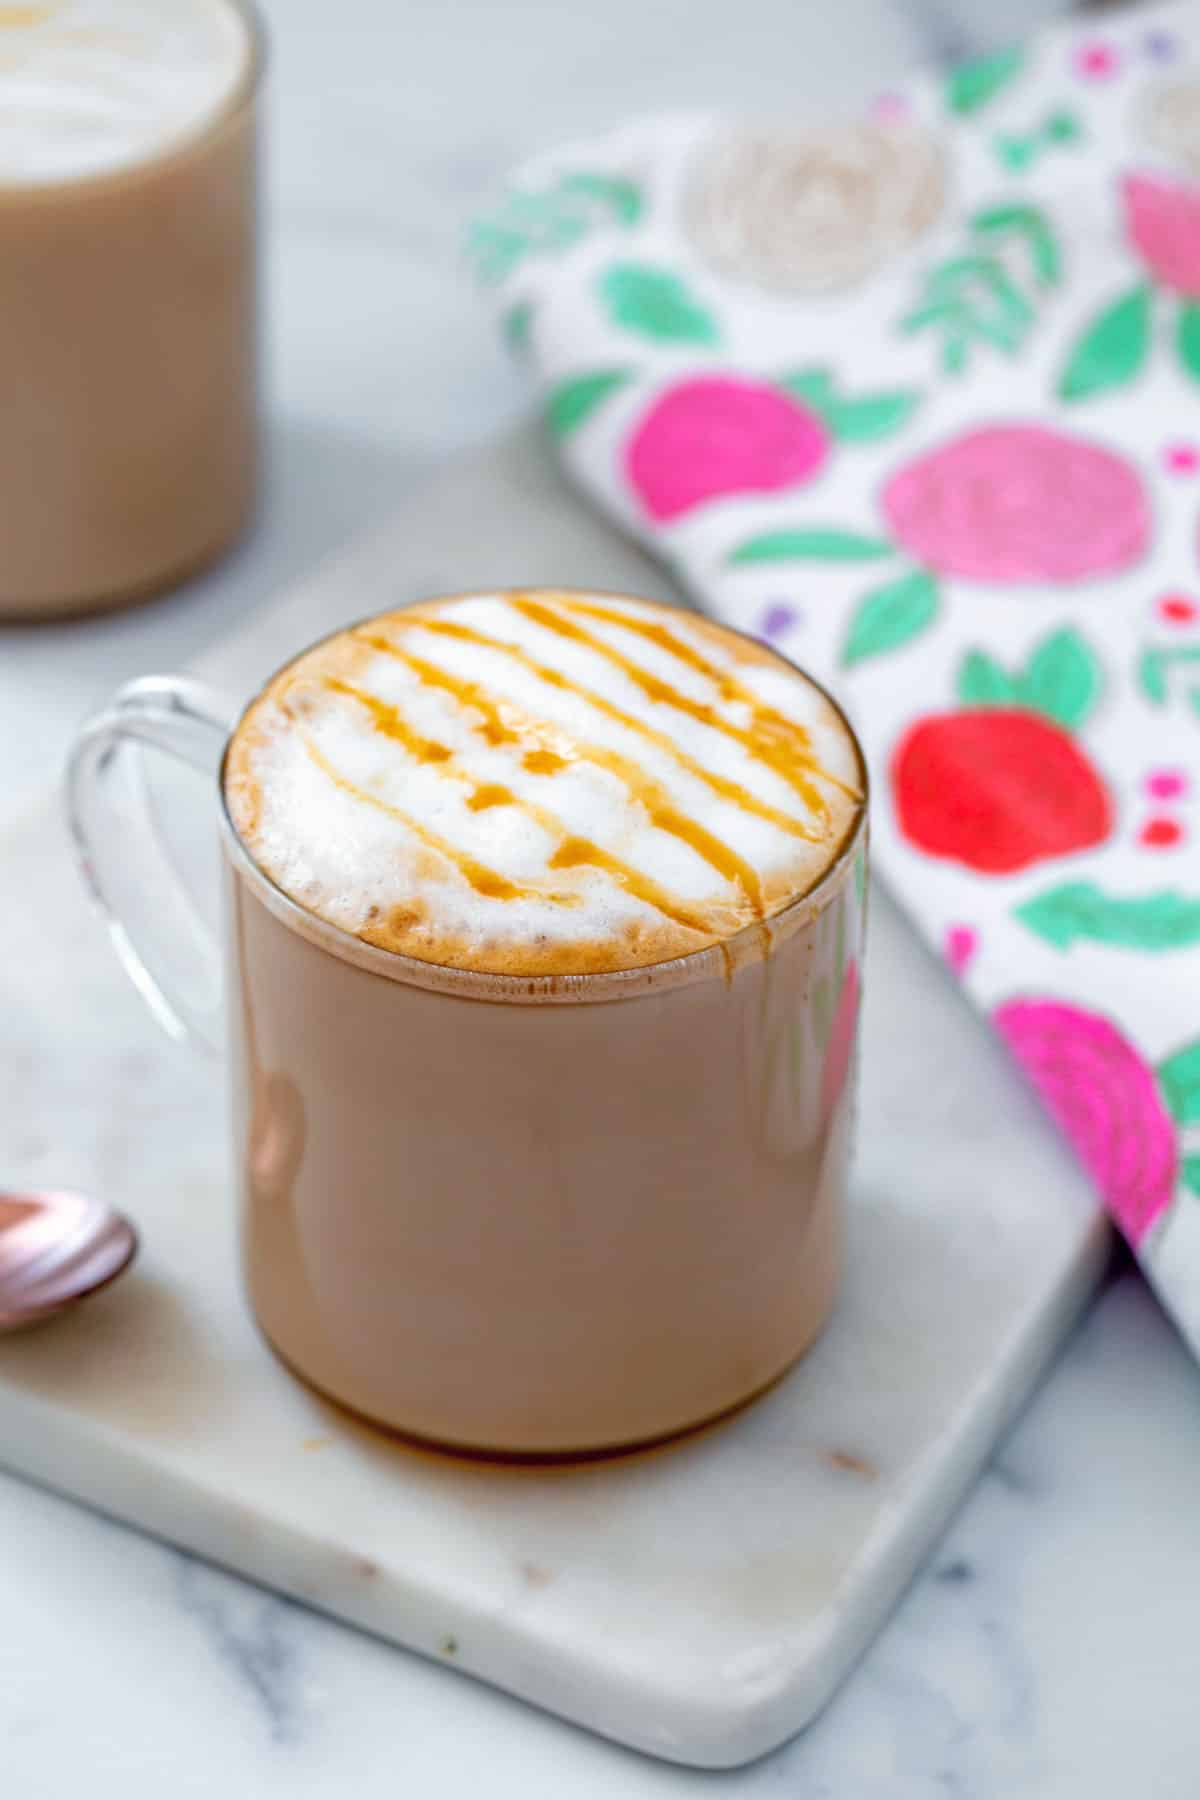 https://wearenotmartha.com/wp-content/uploads/taylor-swift-starbucks-drink-nonfat-caramel-latte-12-2.jpg